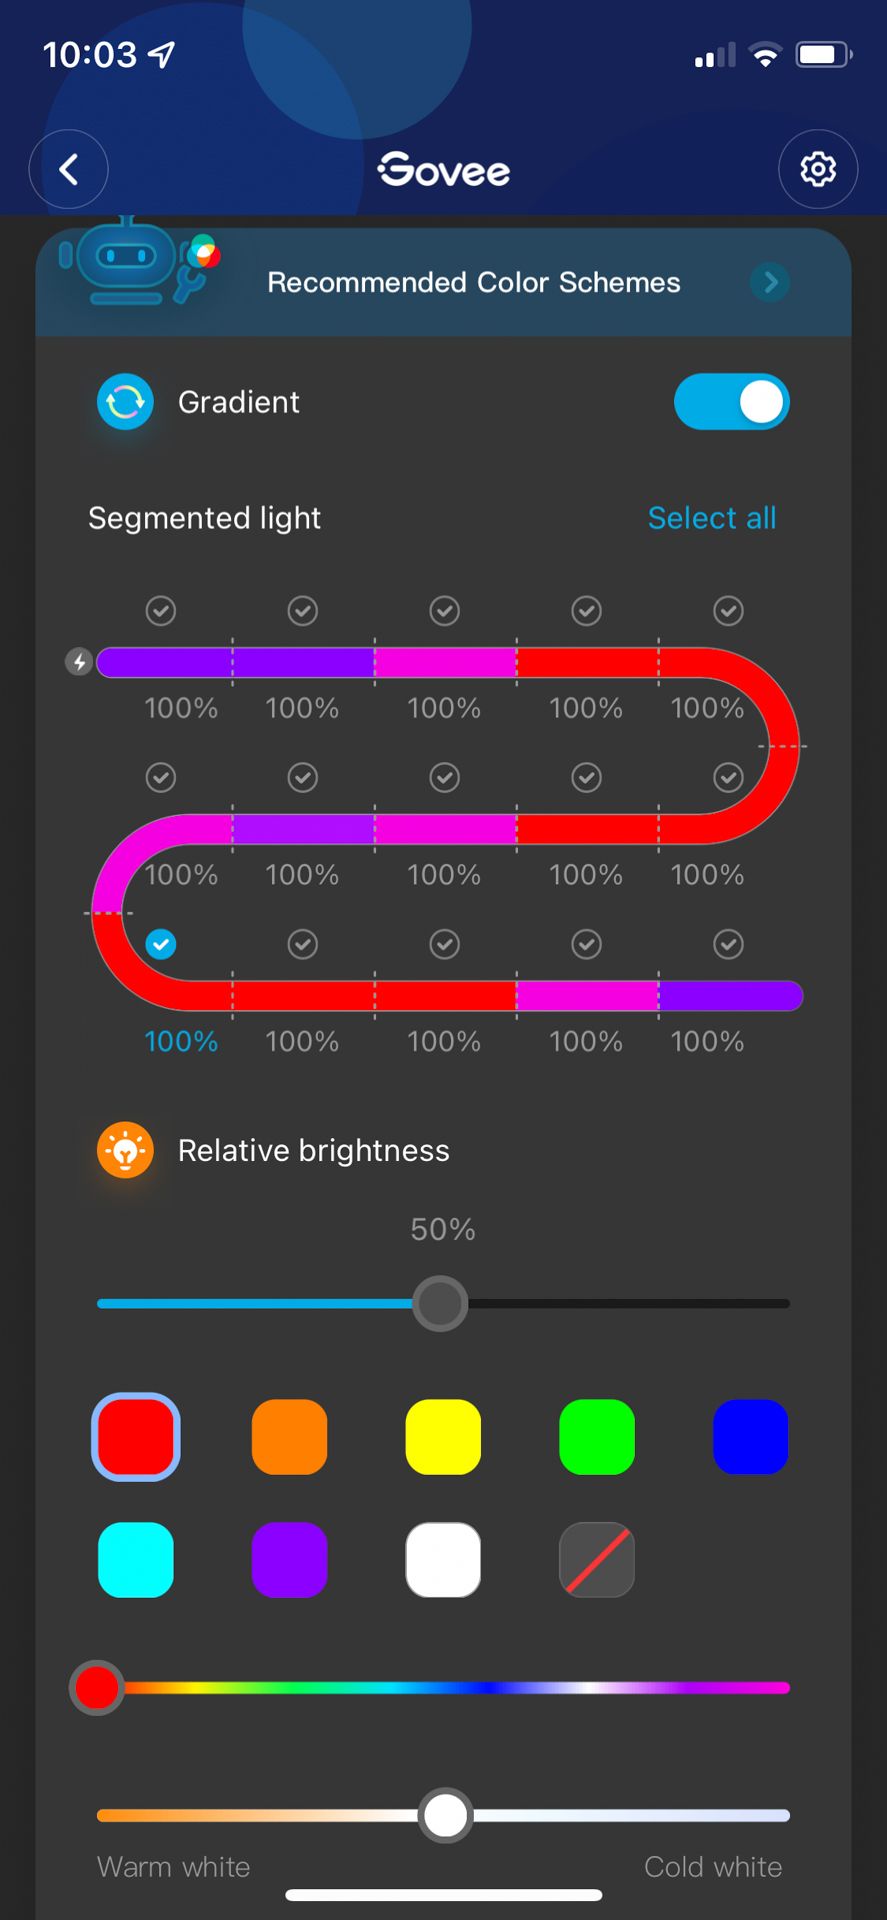 govee app - screenshots - diy colors